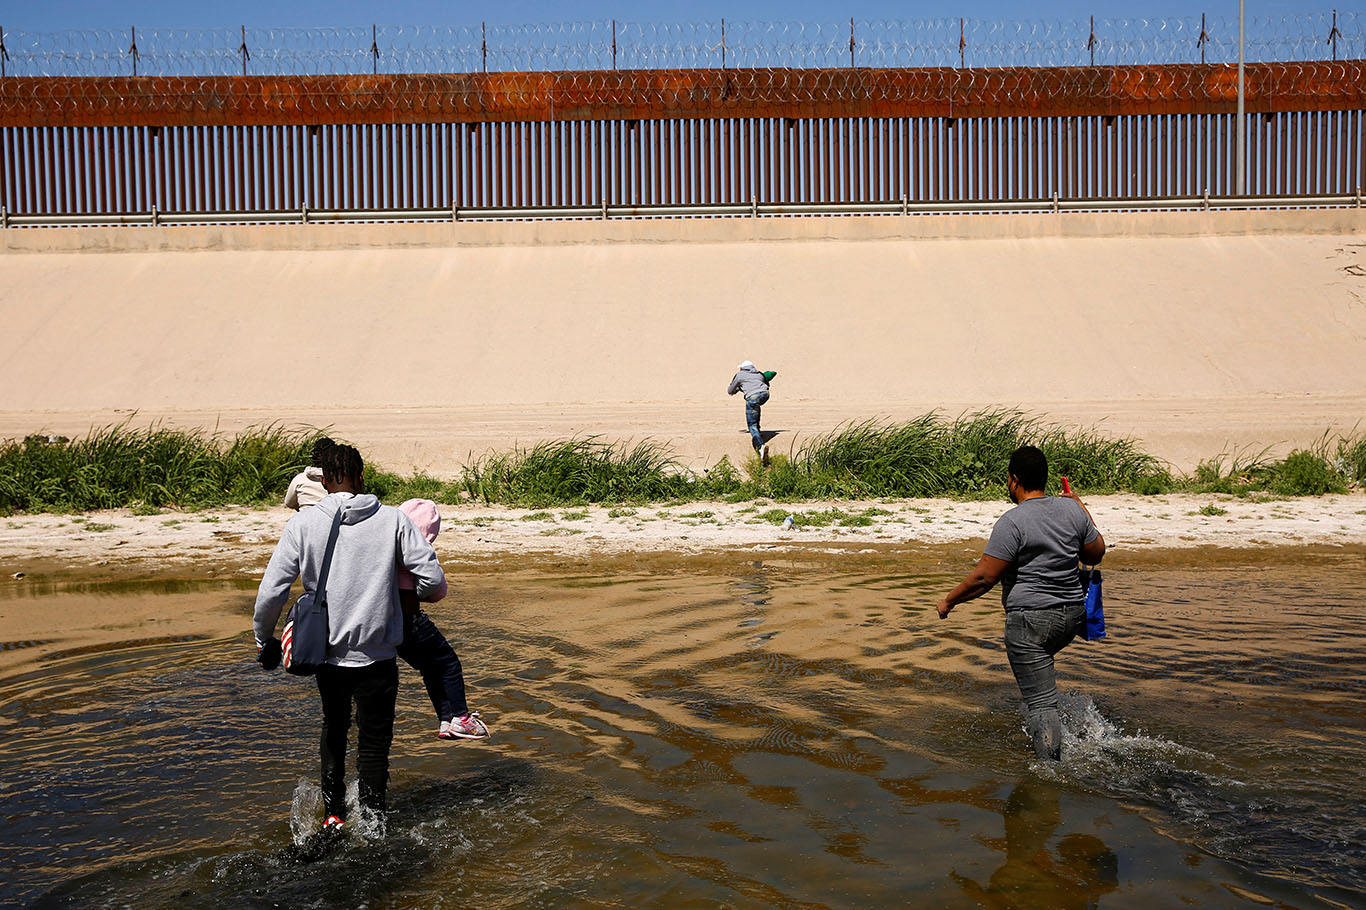 Imigrantes em busca de asilo atravessam o rio Bravo para se entregar aos agentes da Patrulha de Fronteira dos EUA para solicitar asilo em El Paso, Texas (Foto: REUTERS/Jose Luis Gonzalez)